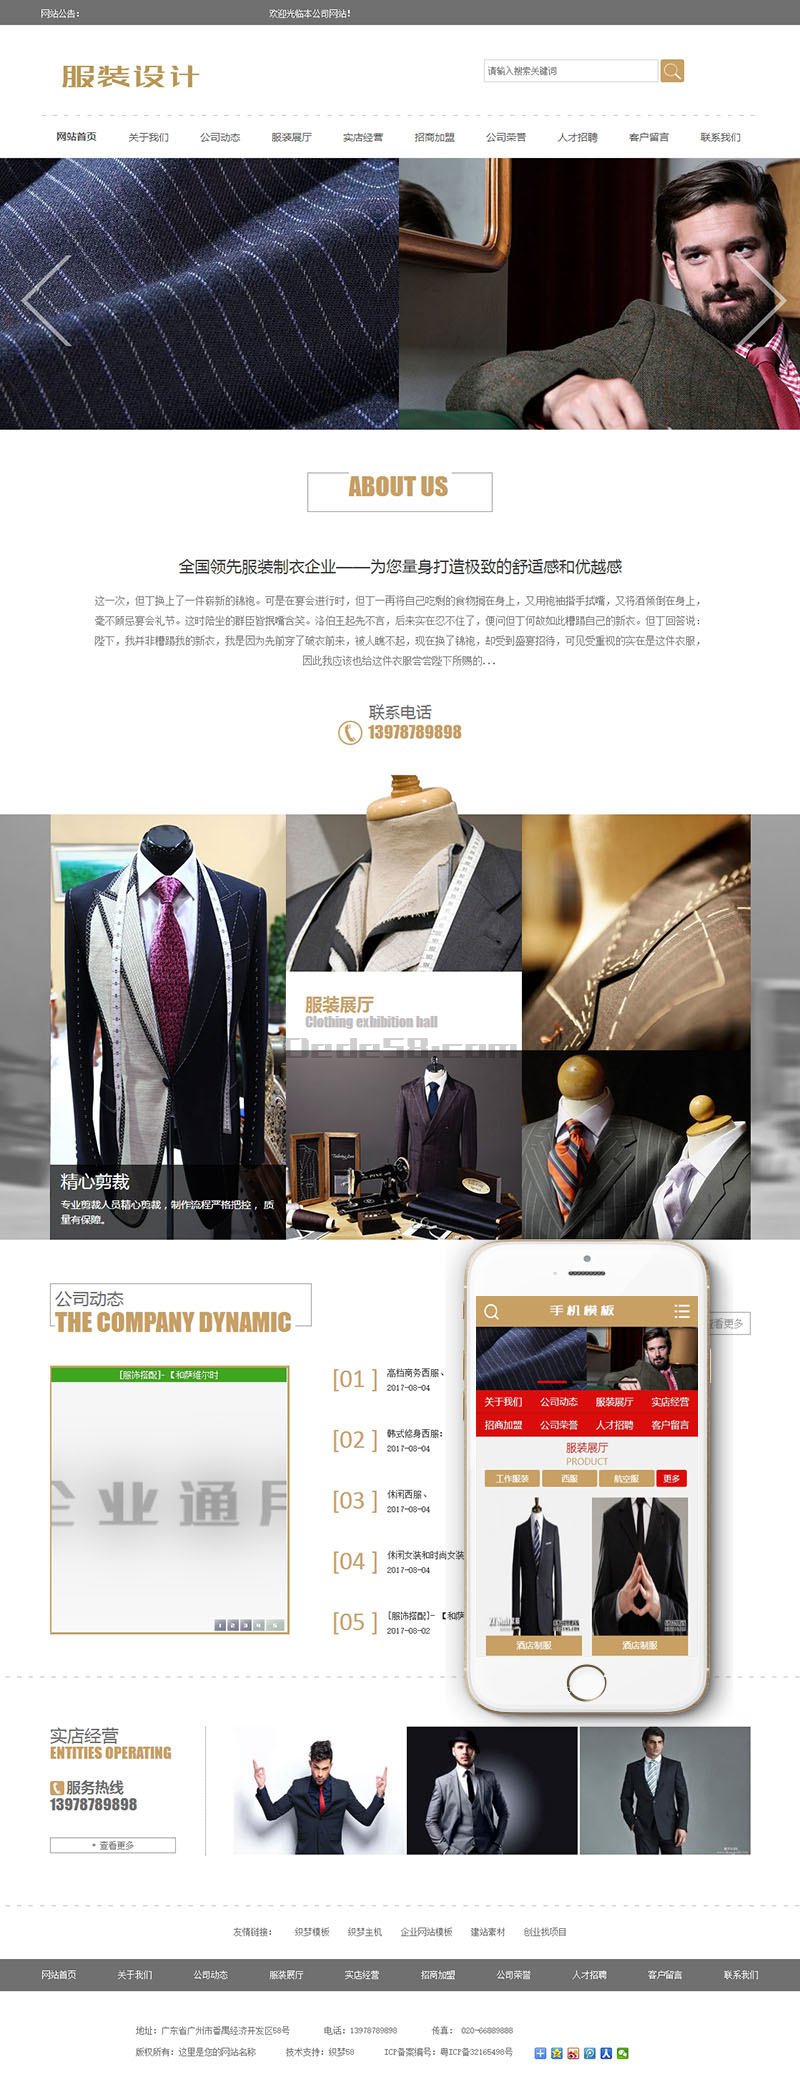 服装设计展示企业网站源码 dedecms织梦模板 (带手机端)